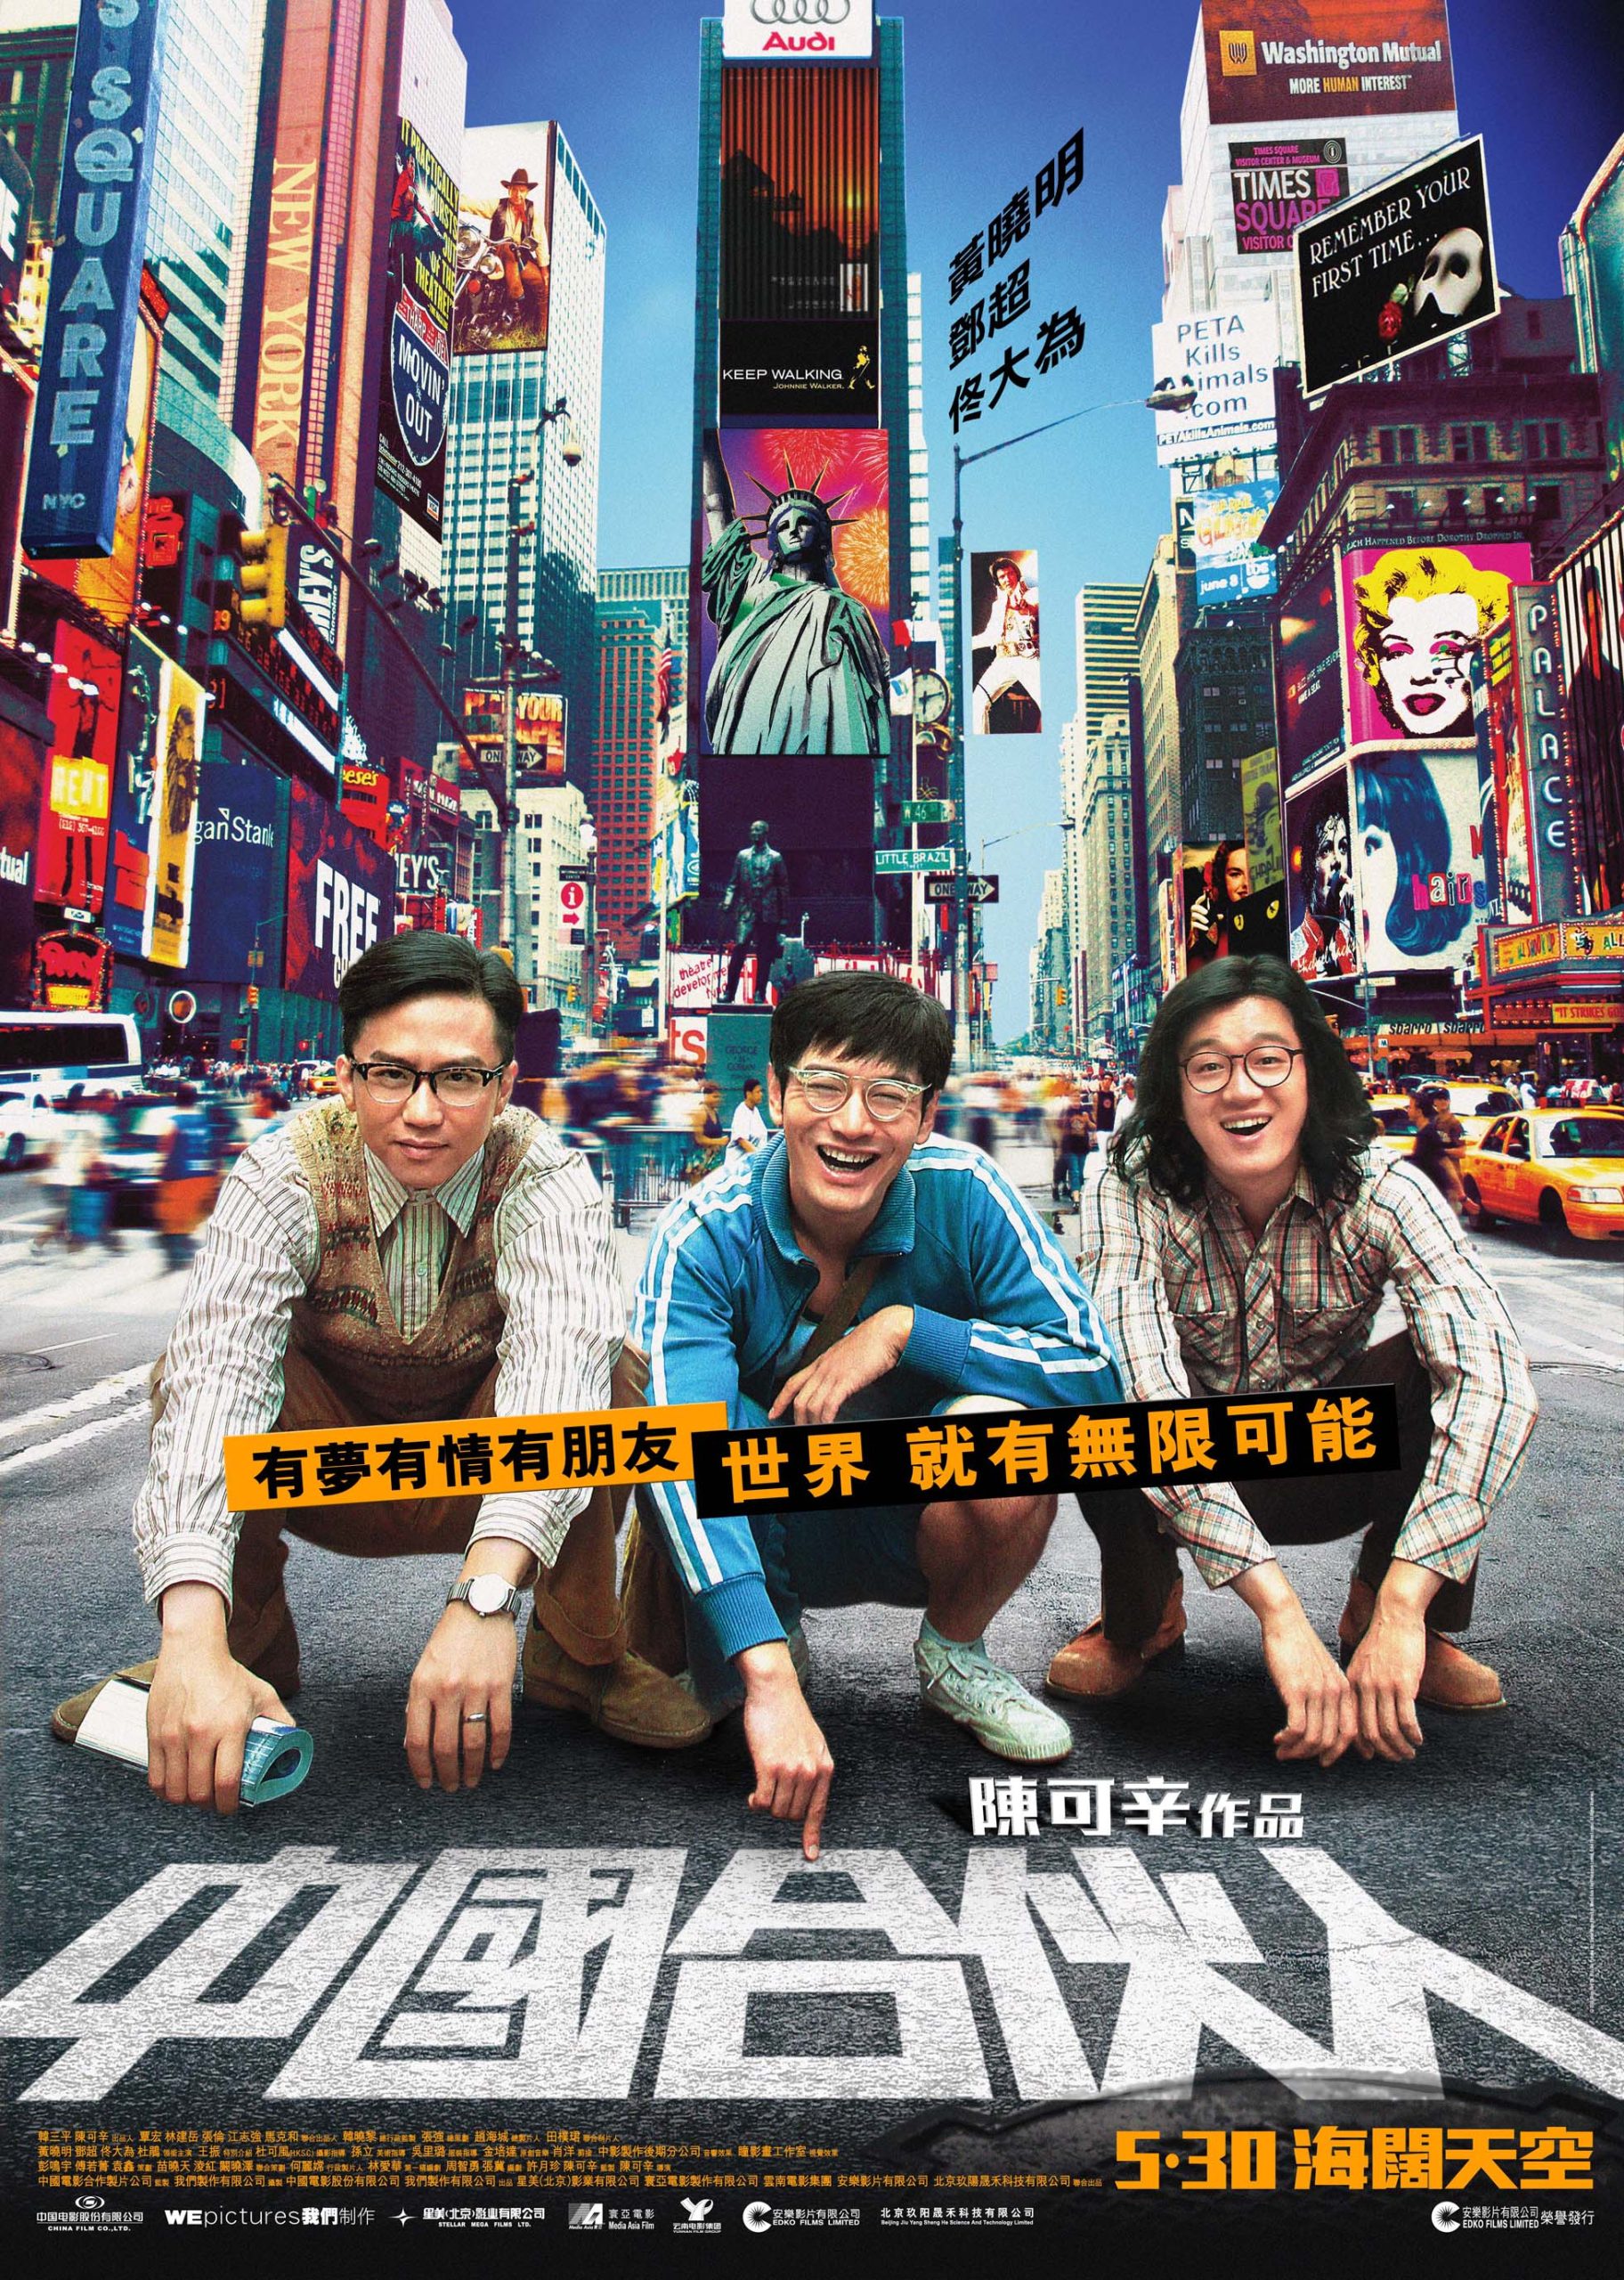 ดูหนังออนไลน์ฟรี American Dreams in China (2013) สามซ่า กล้า ท้า ฝัน หนังเต็มเรื่อง หนังมาสเตอร์ ดูหนังHD ดูหนังออนไลน์ ดูหนังใหม่